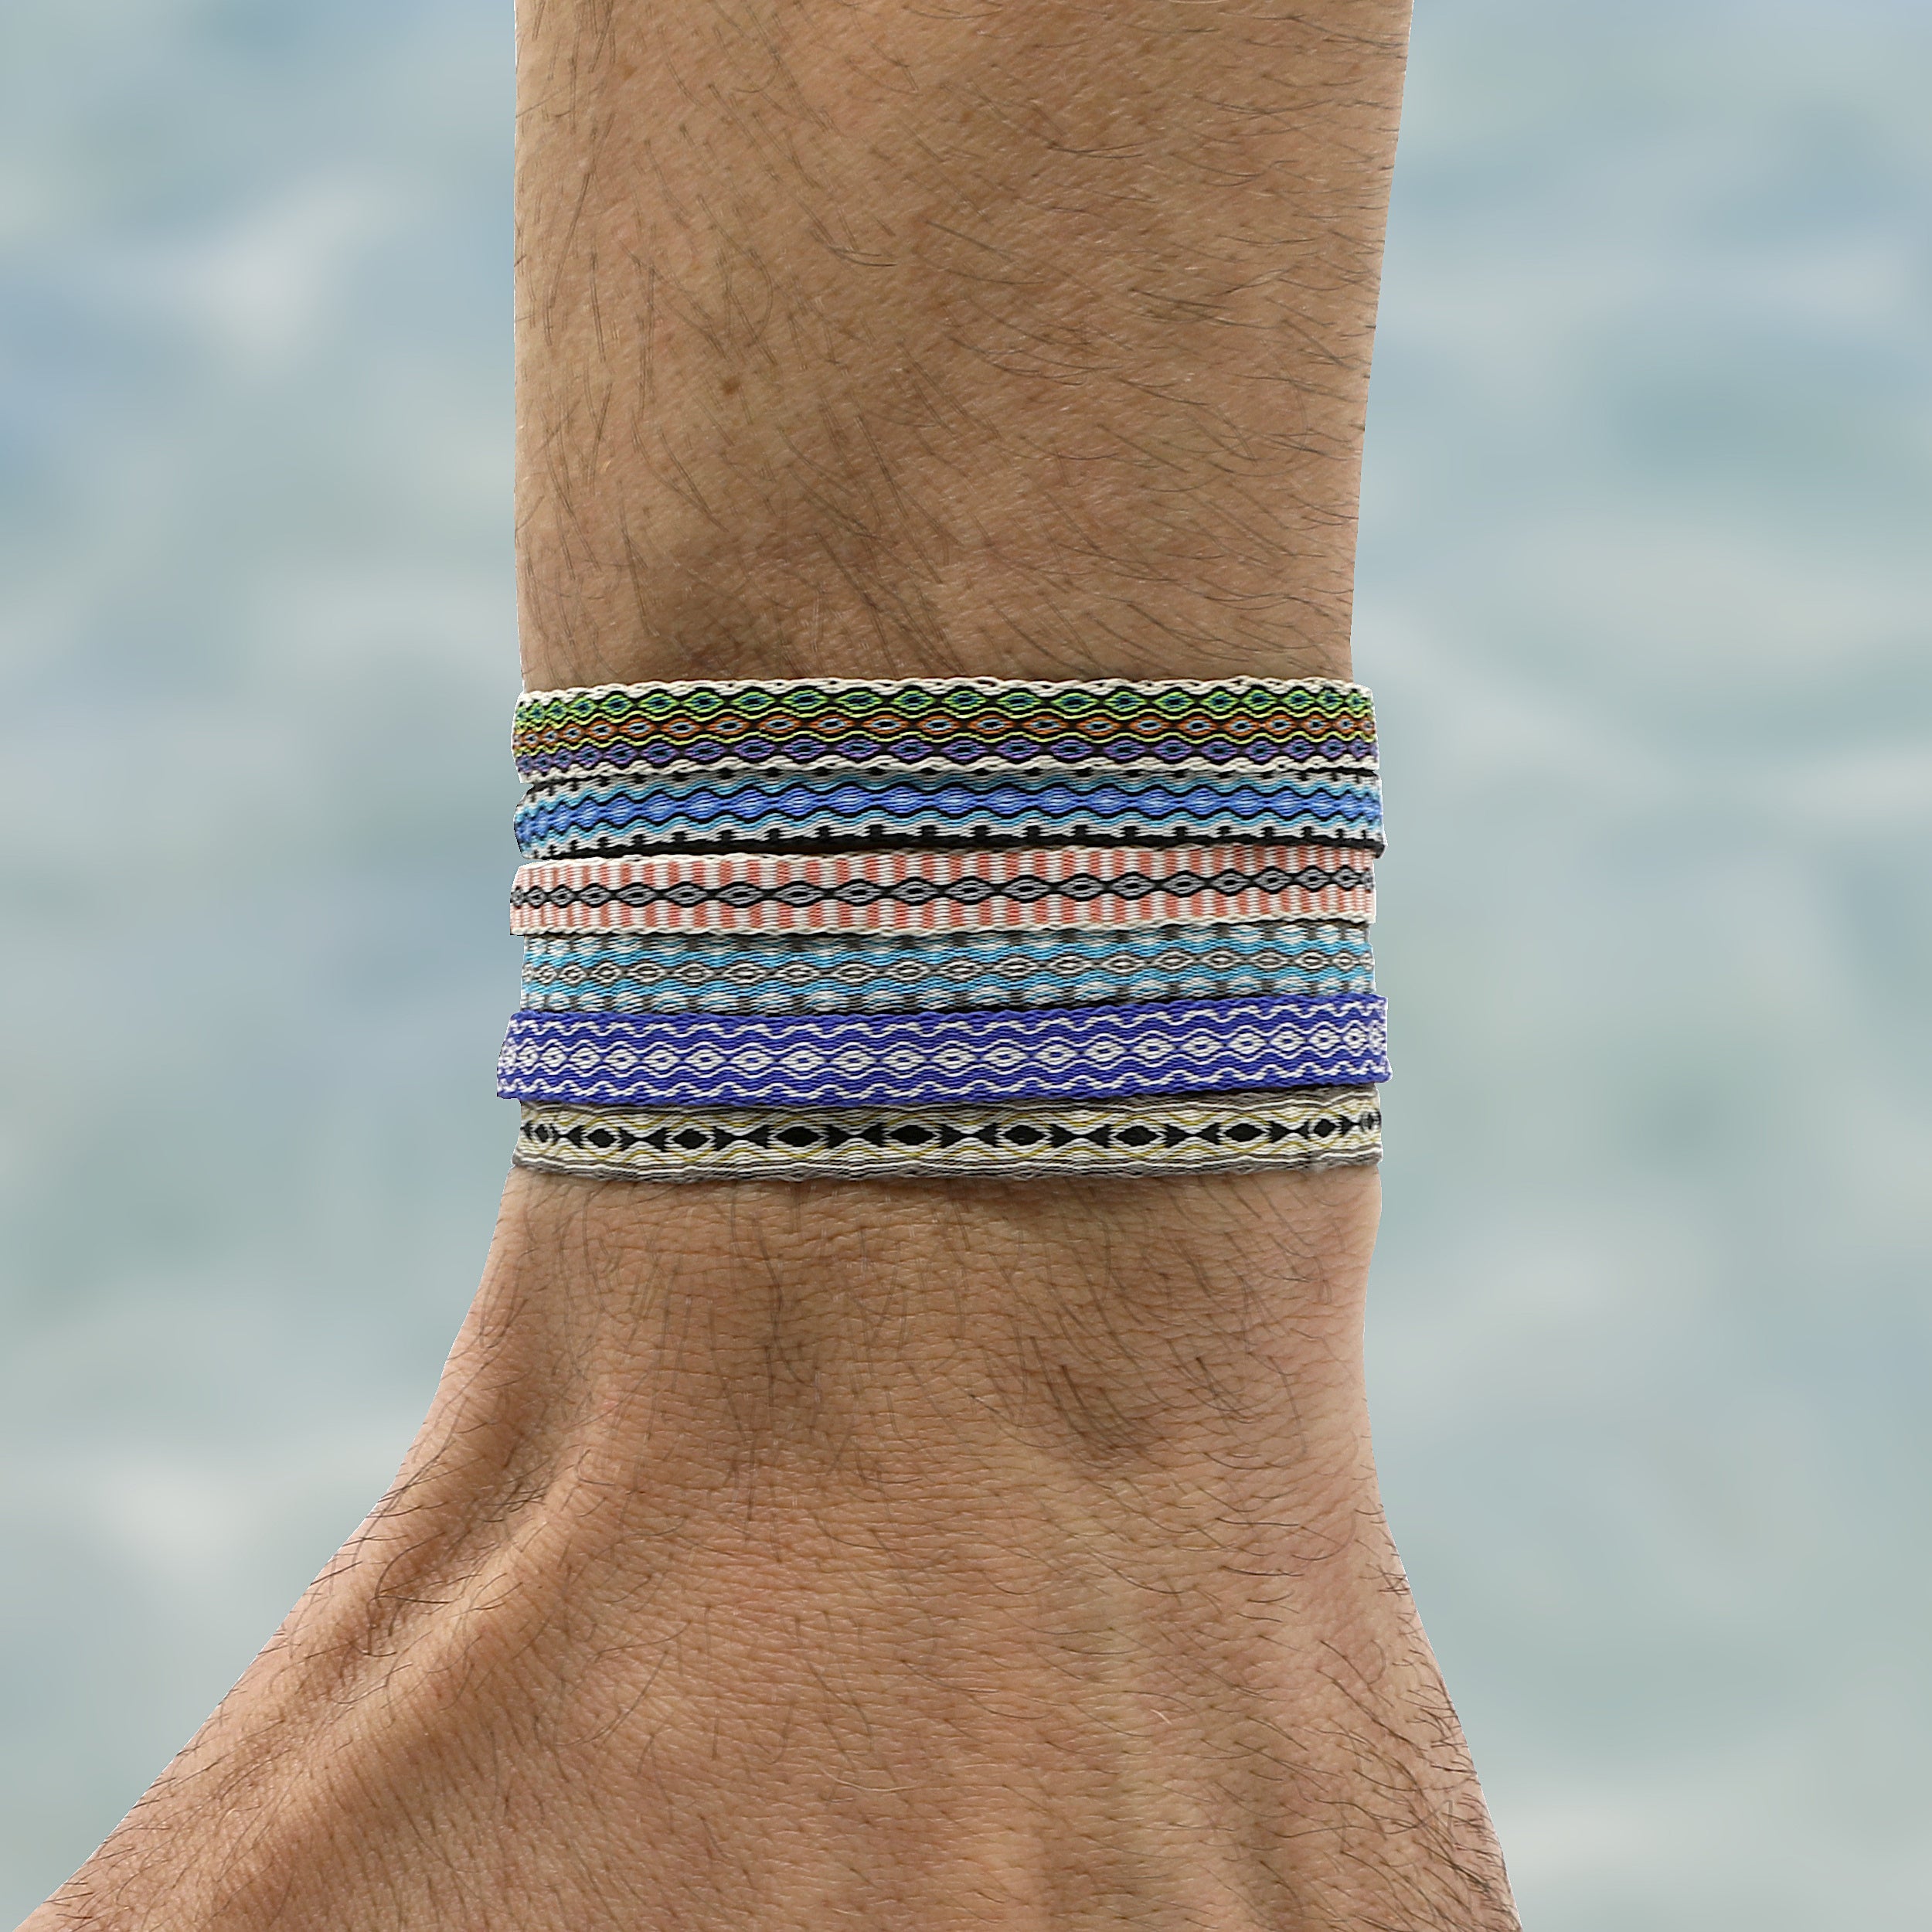 Handmade Purnama Bracelet (Multicolors)